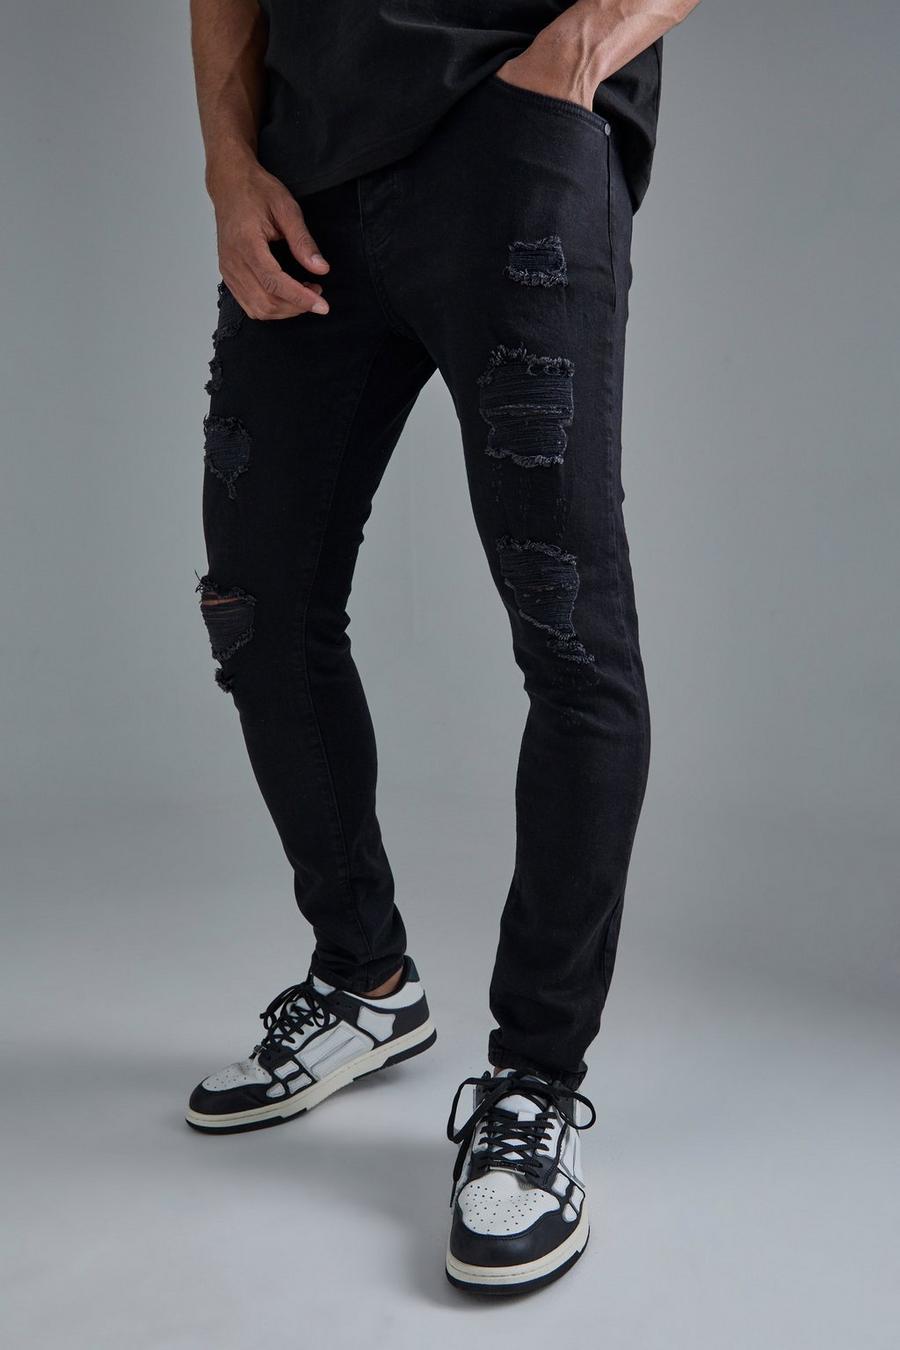 True black Slitna skinny jeans